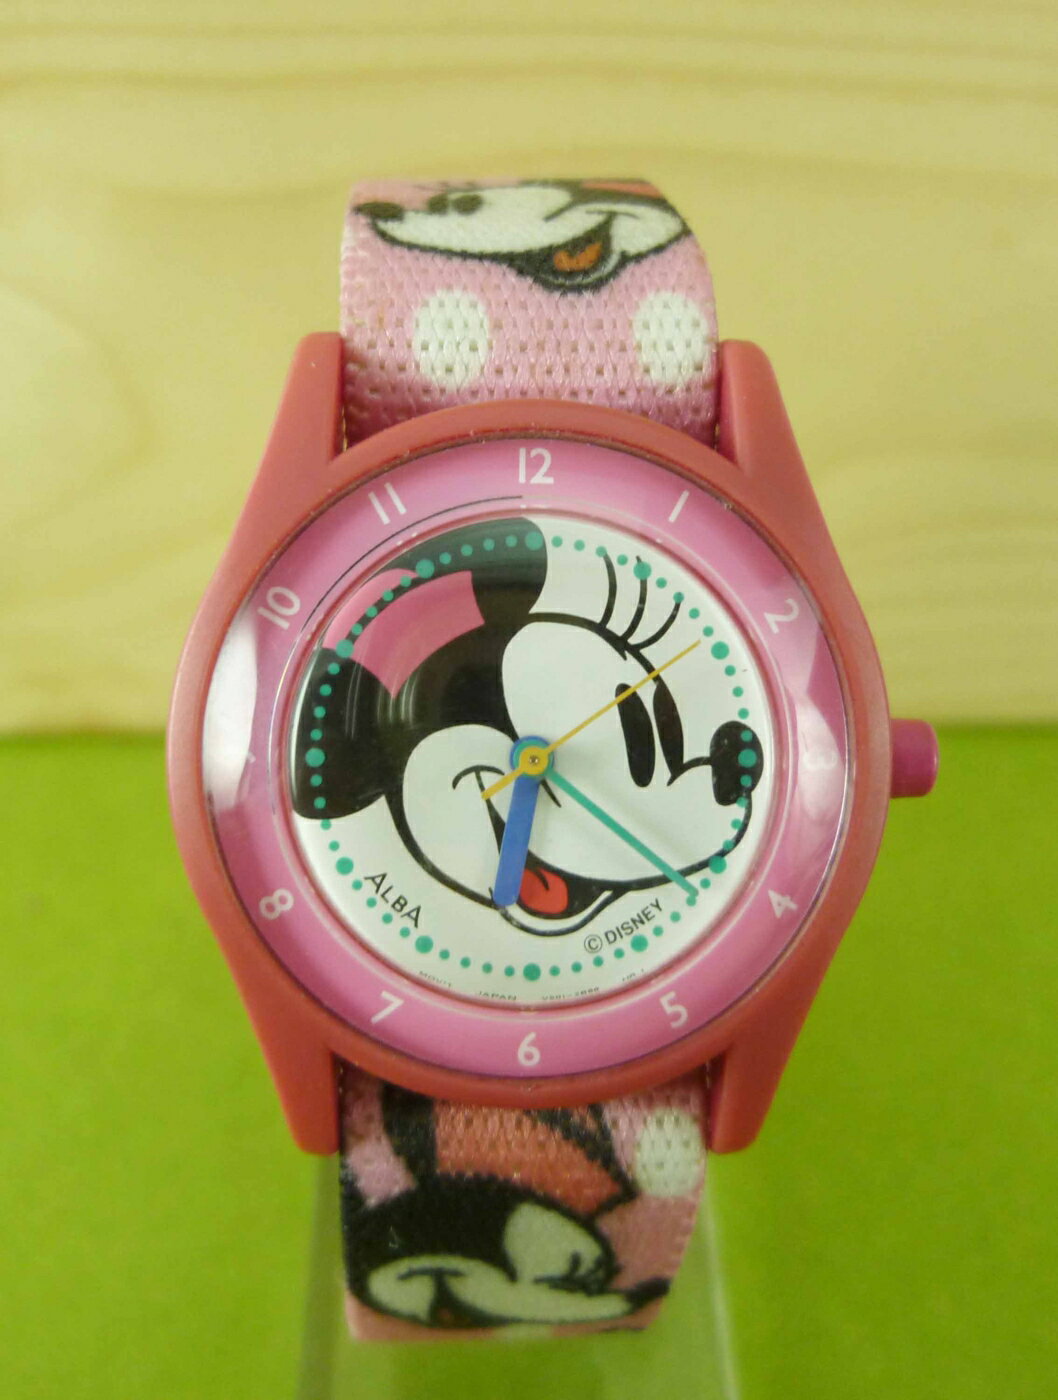 【震撼精品百貨】米奇/米妮 Micky Mouse 手錶-米妮大頭圖案-粉色 震撼日式精品百貨